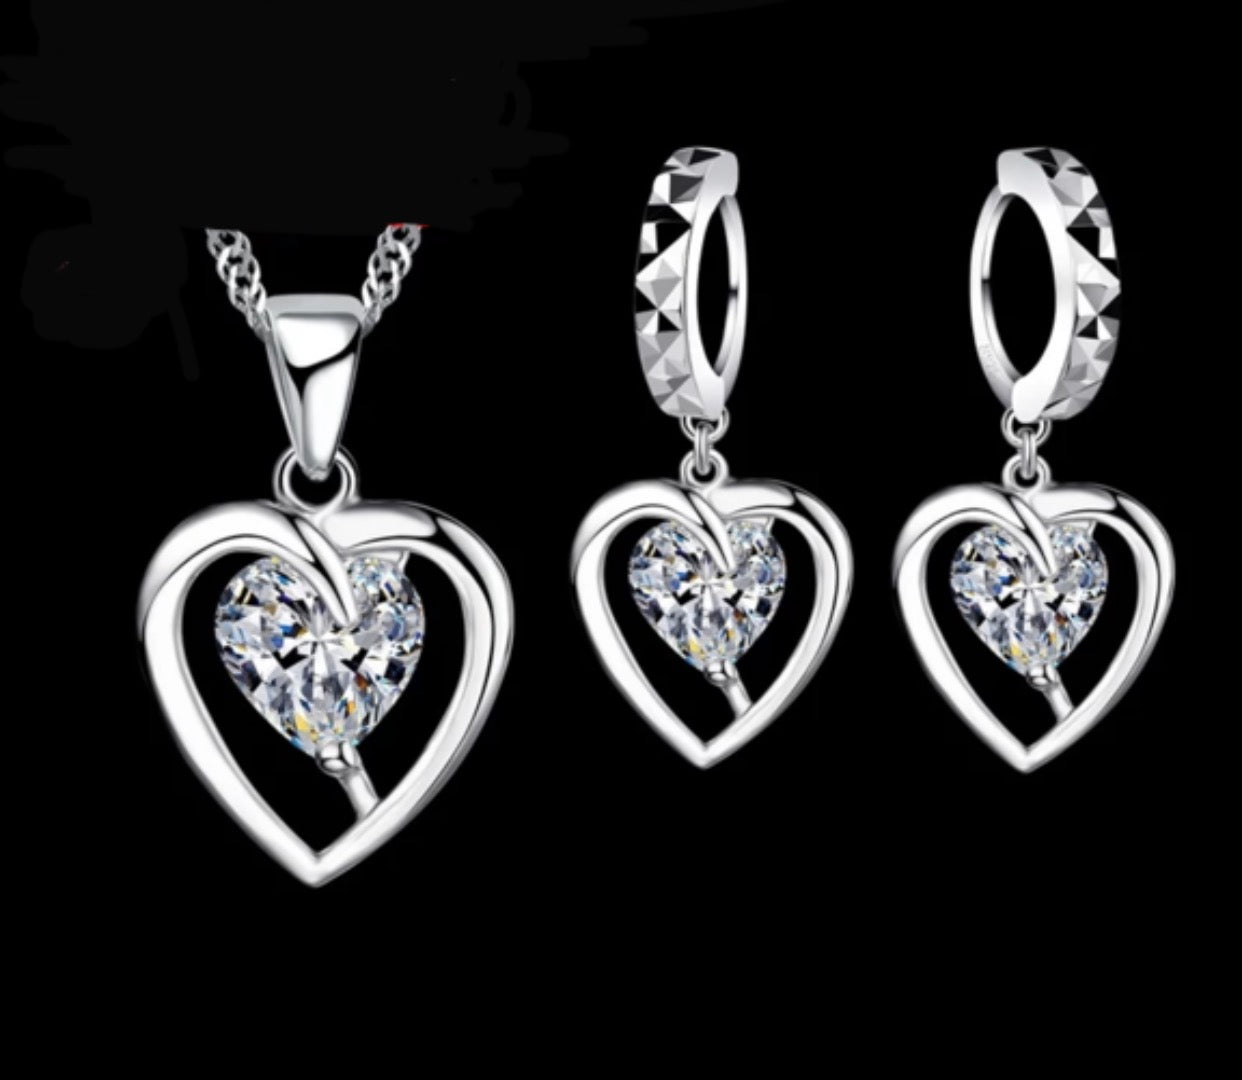 Heart shape Sterling Silver 925 Necklace Dangling Earrings